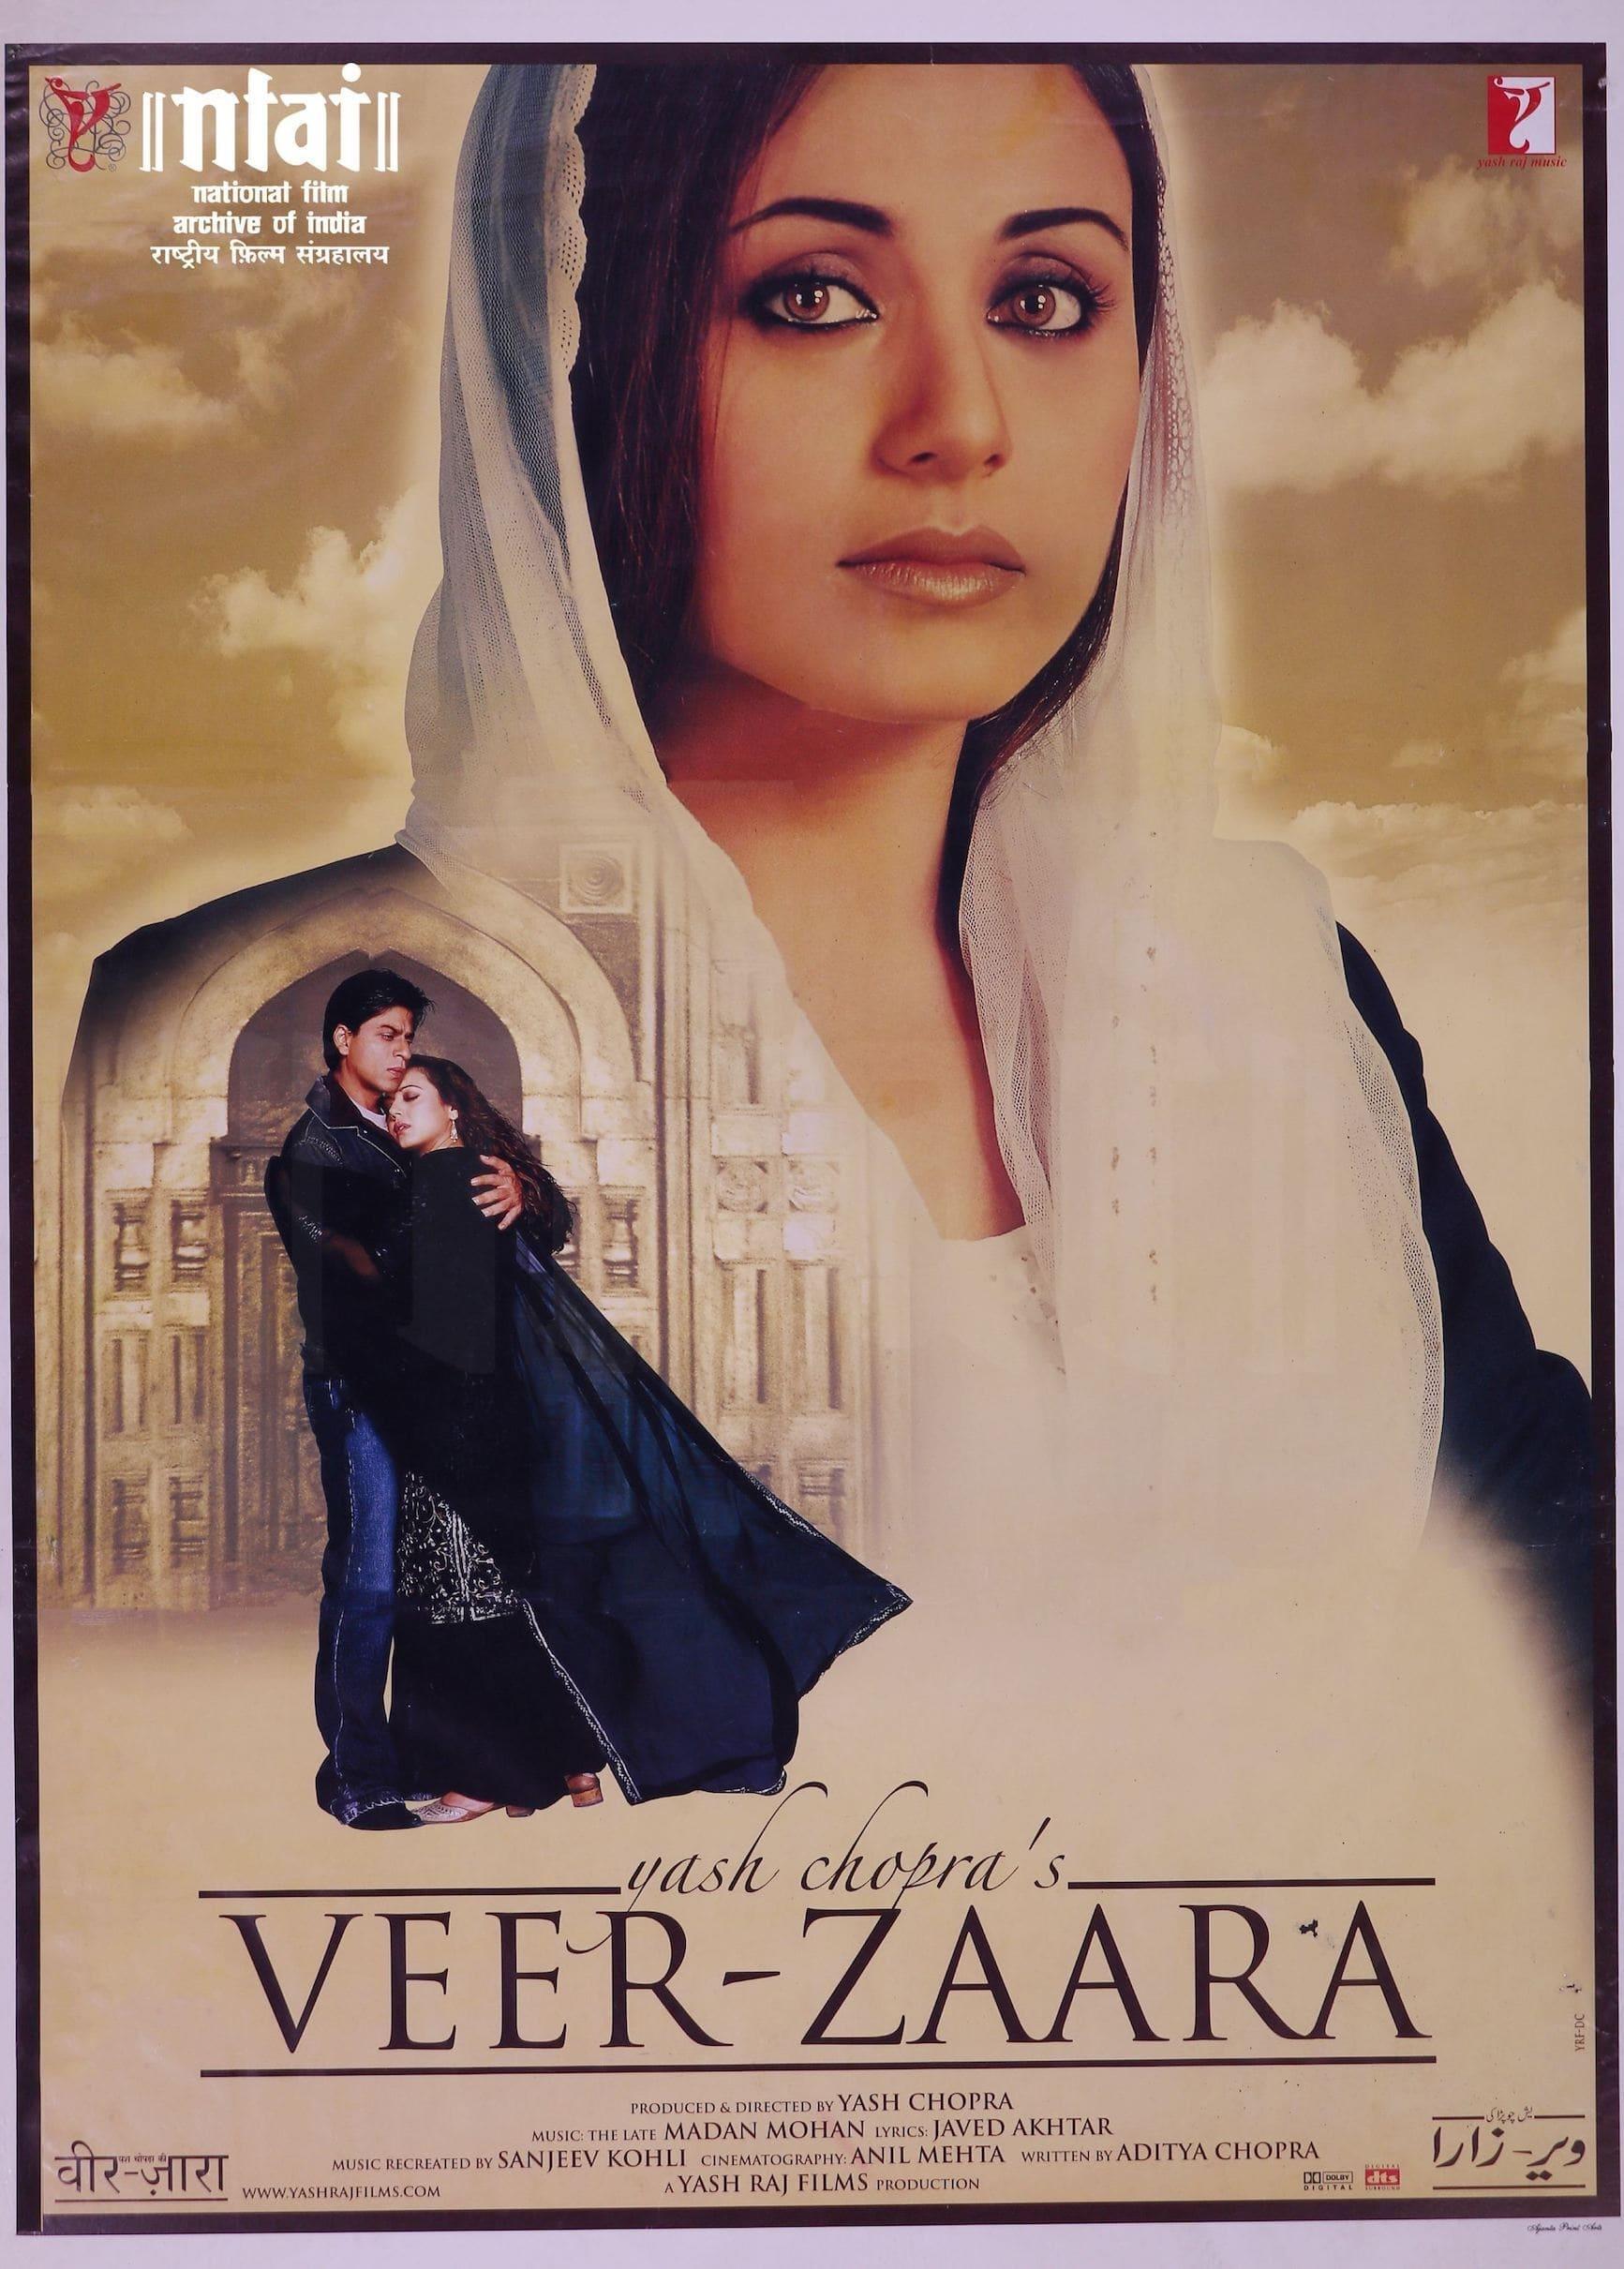 Veer-Zaara poster